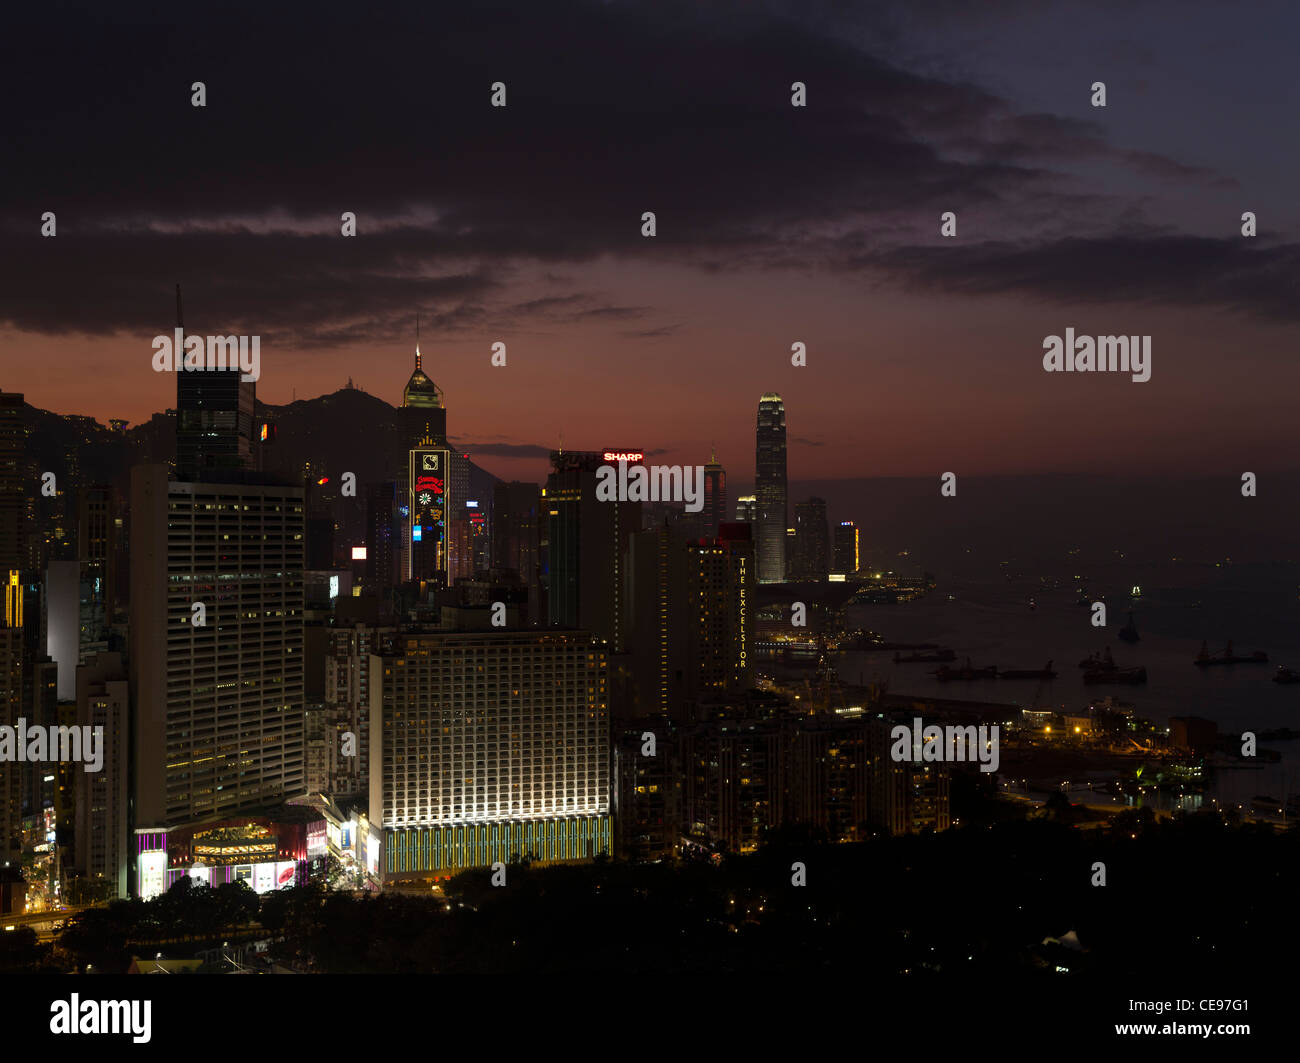 Hafengebäuden dh CAUSEWAY BAY Sunset in Hong Kong Skyline Dämmerung Nacht China Stadtbild Stockfoto